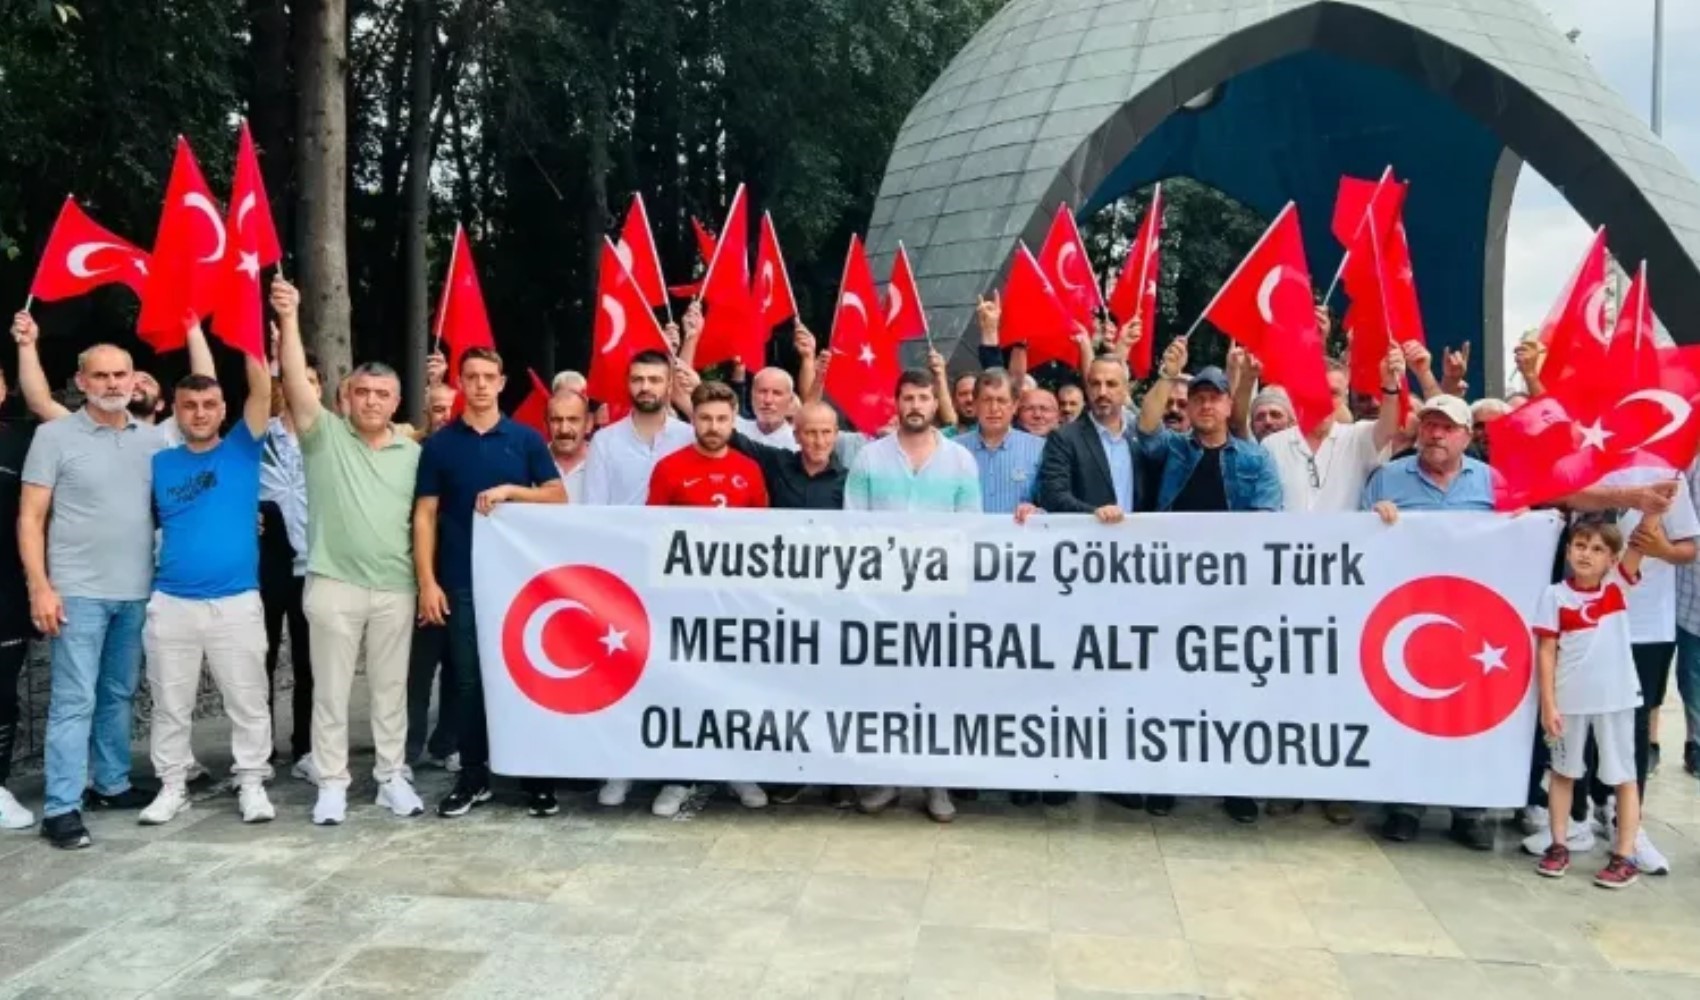 Merih Demiral’a memleketinden destek: MHP Karamürsel İlçe Başkanlığı pankart astı